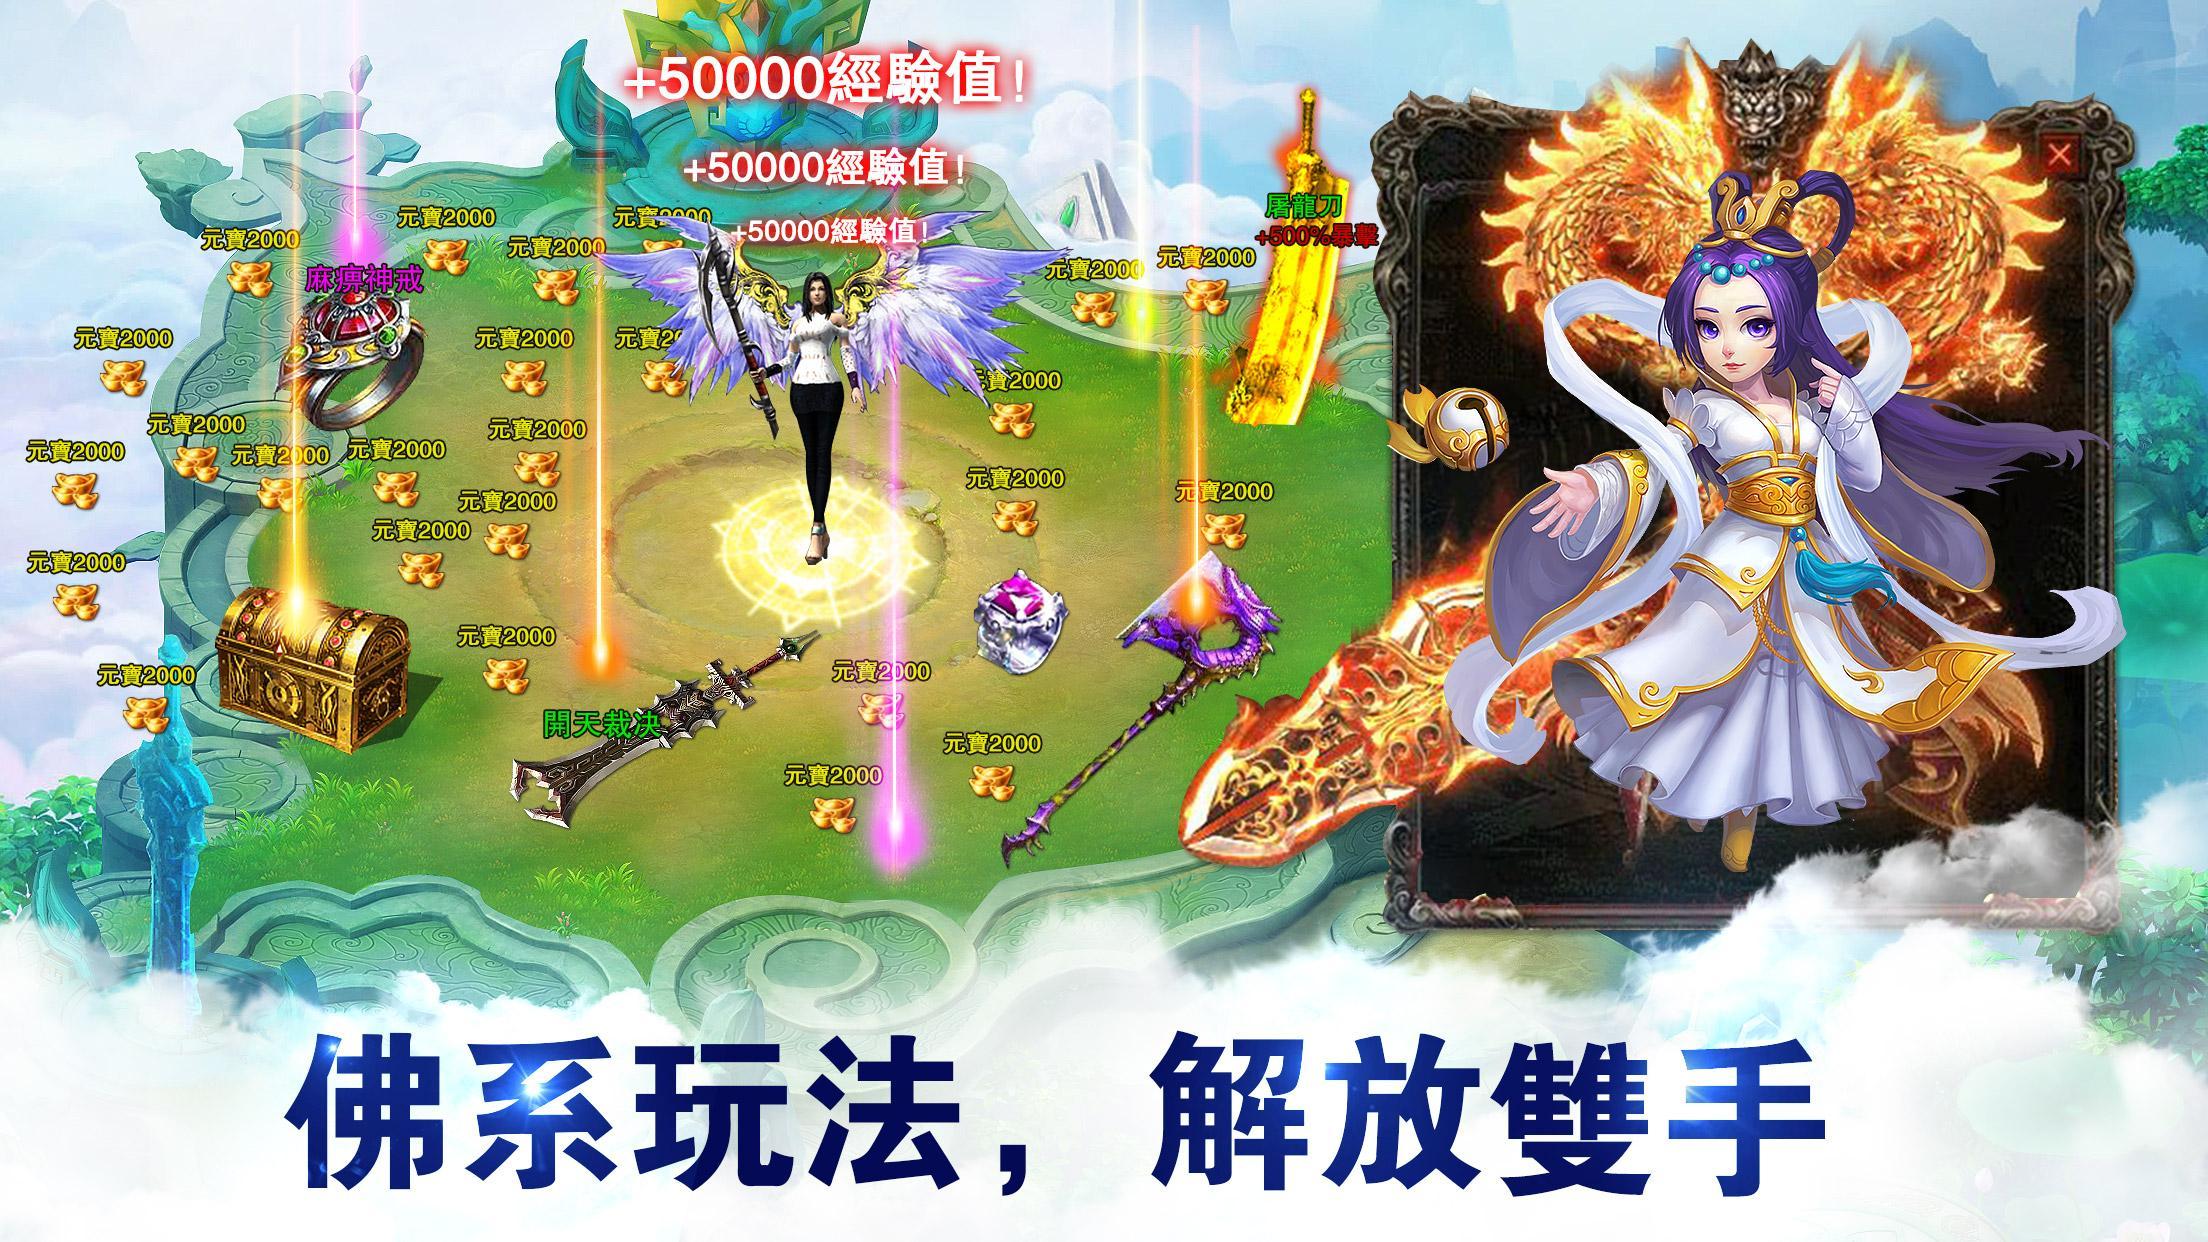 Screenshot 1 of Legend of Fengshen-เกมมือถือเพื่อการพักผ่อนที่ไม่ได้ใช้งานของชาวพุทธ 201901251730-apk